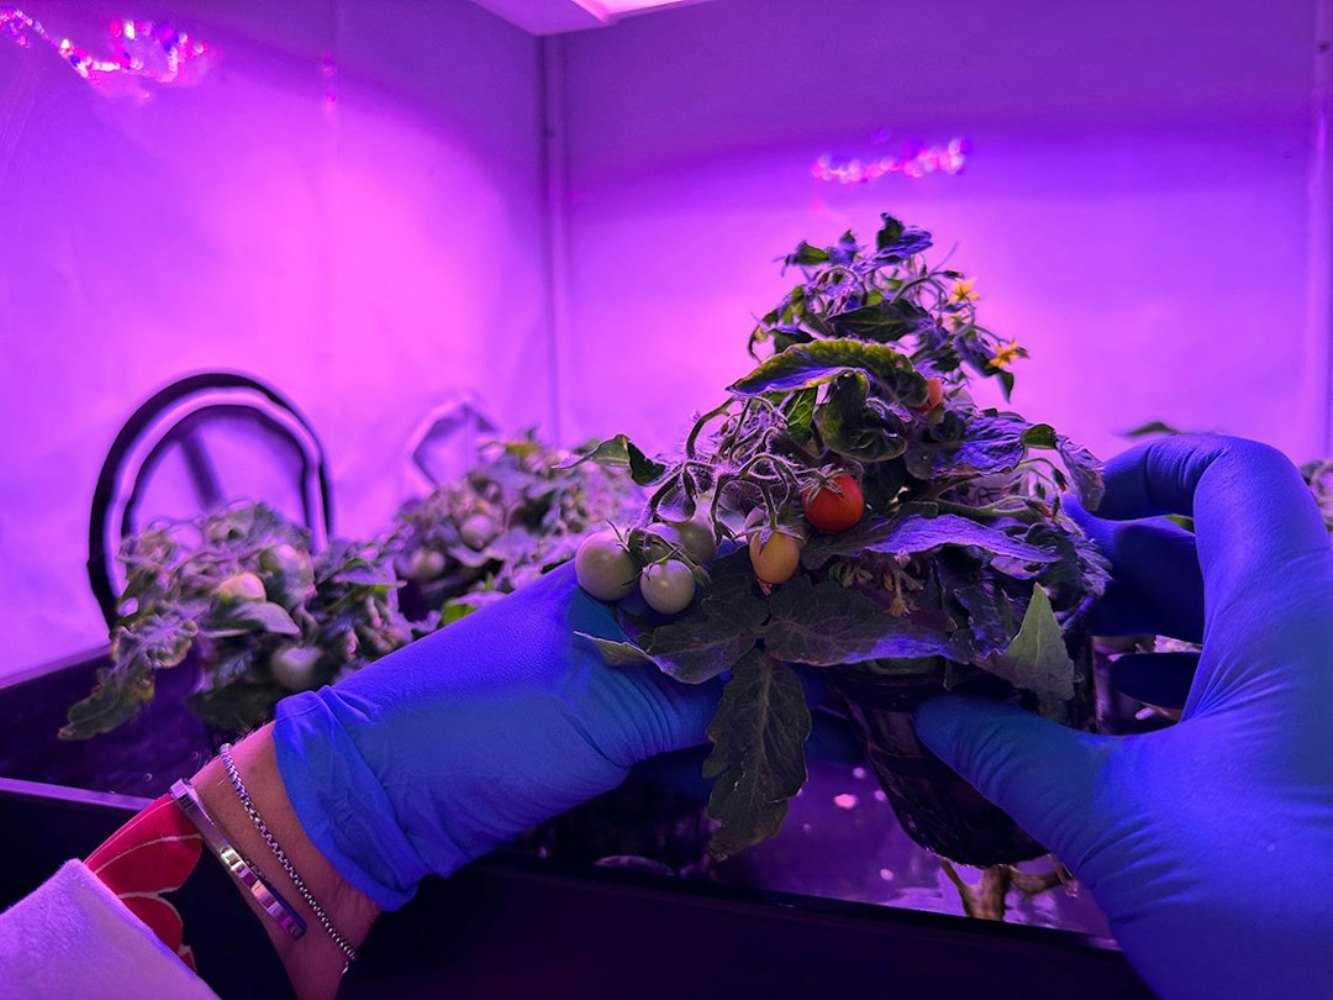 San Marziano tomato: ENEA scientists create it for astronauts